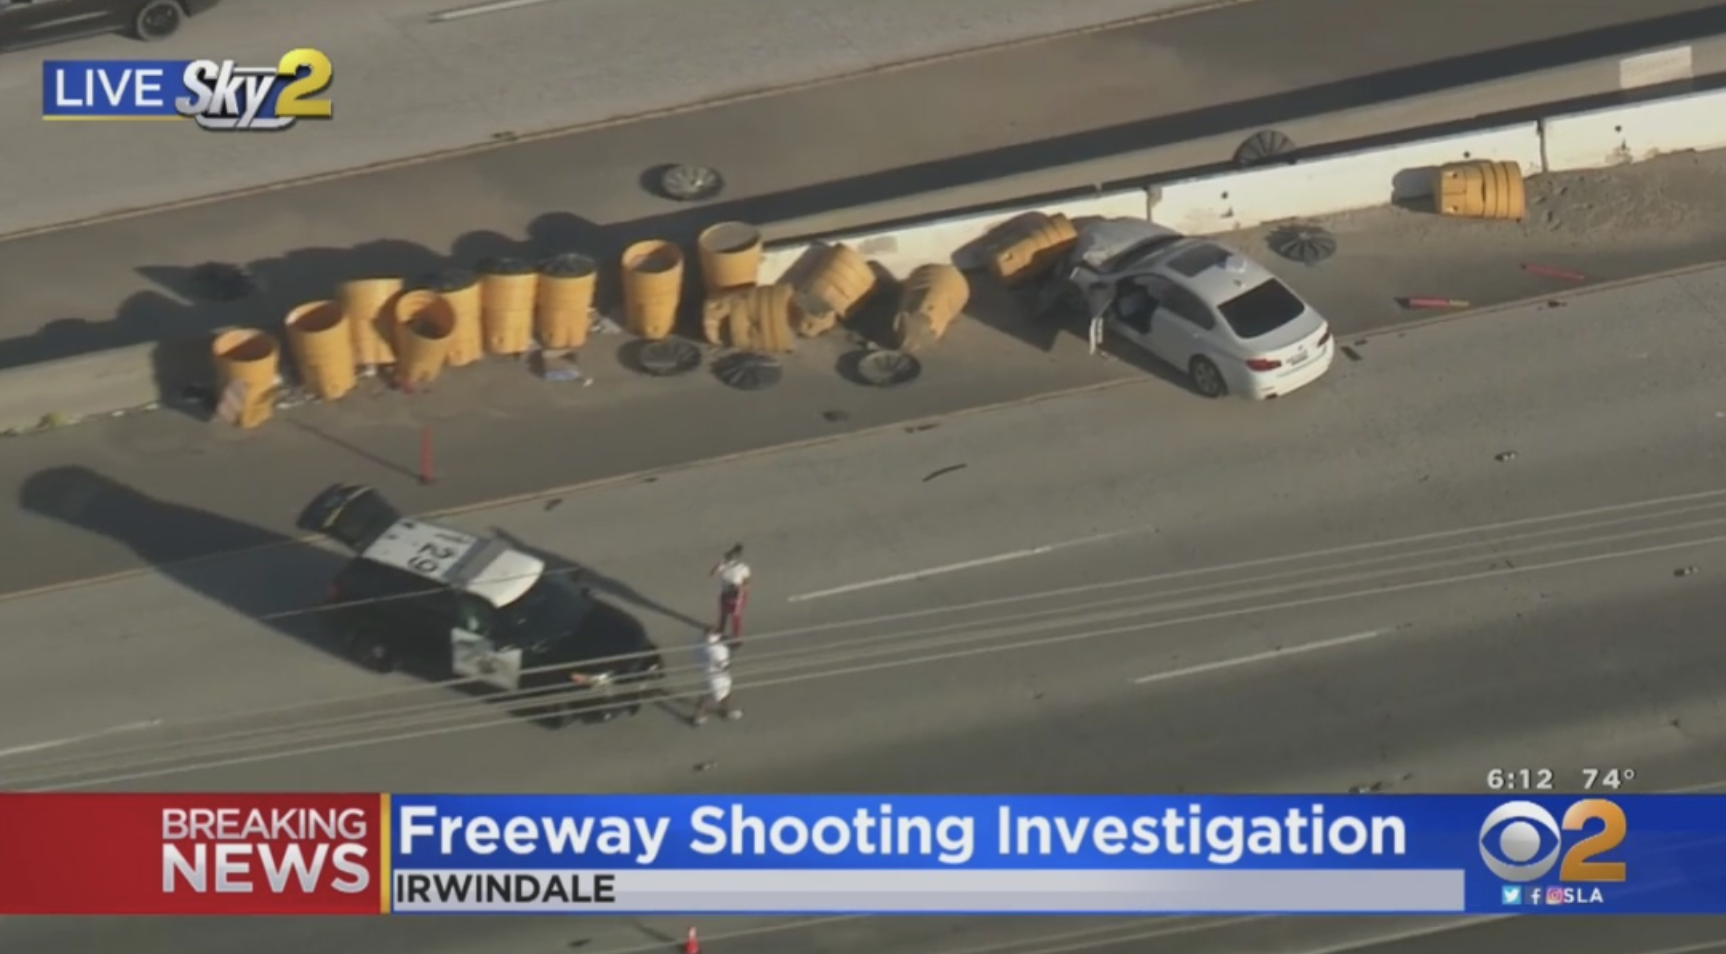 Freeway Shooting 605 Irwindale